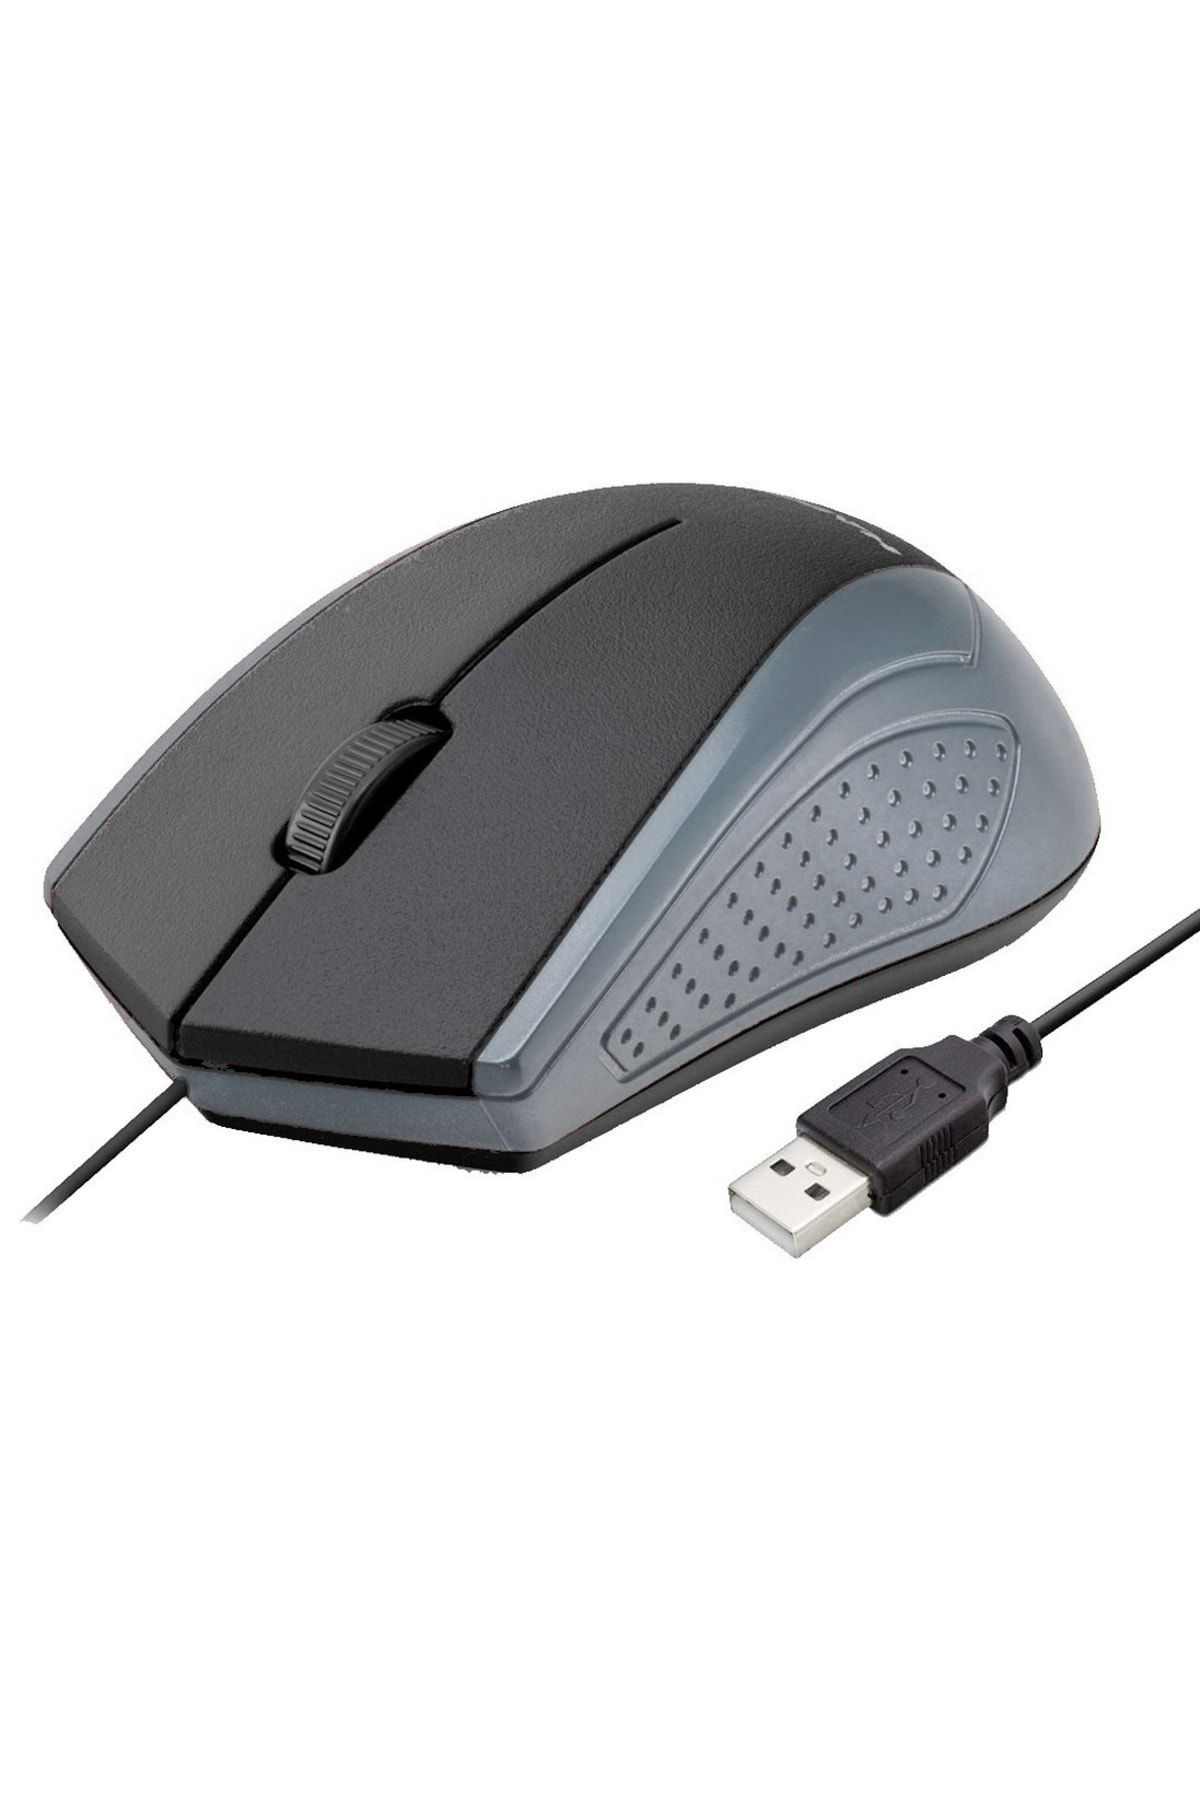 HADRON Hd5692 Ofis Amaçlı Usb Kablolu Bilgisayar Faresi Mouse